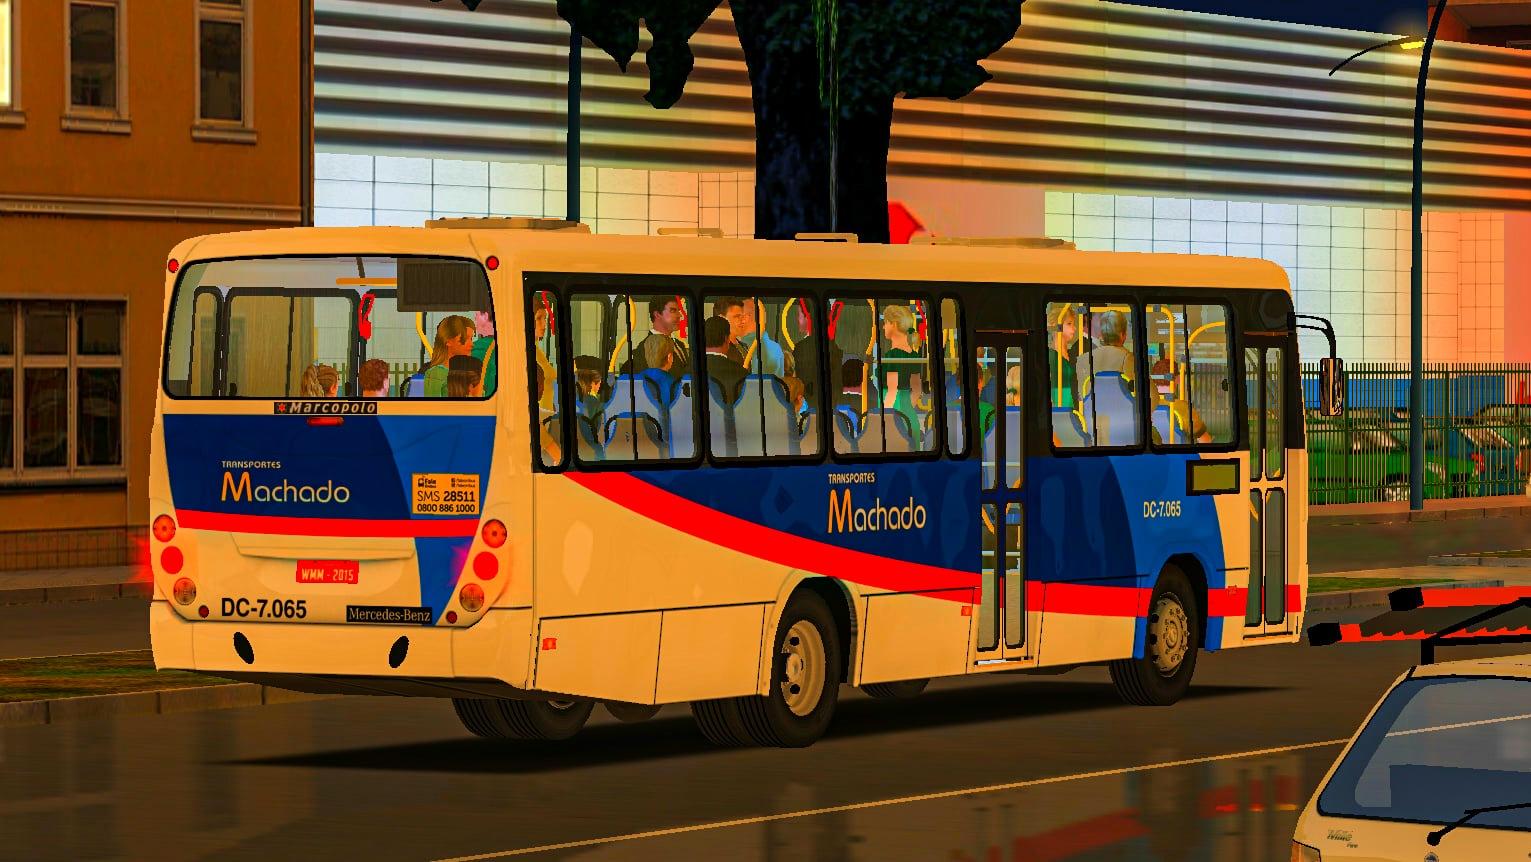 Download Mods Proton Bus Simulator e Proton Bus Road Free for Android -  Mods Proton Bus Simulator e Proton Bus Road APK Download 